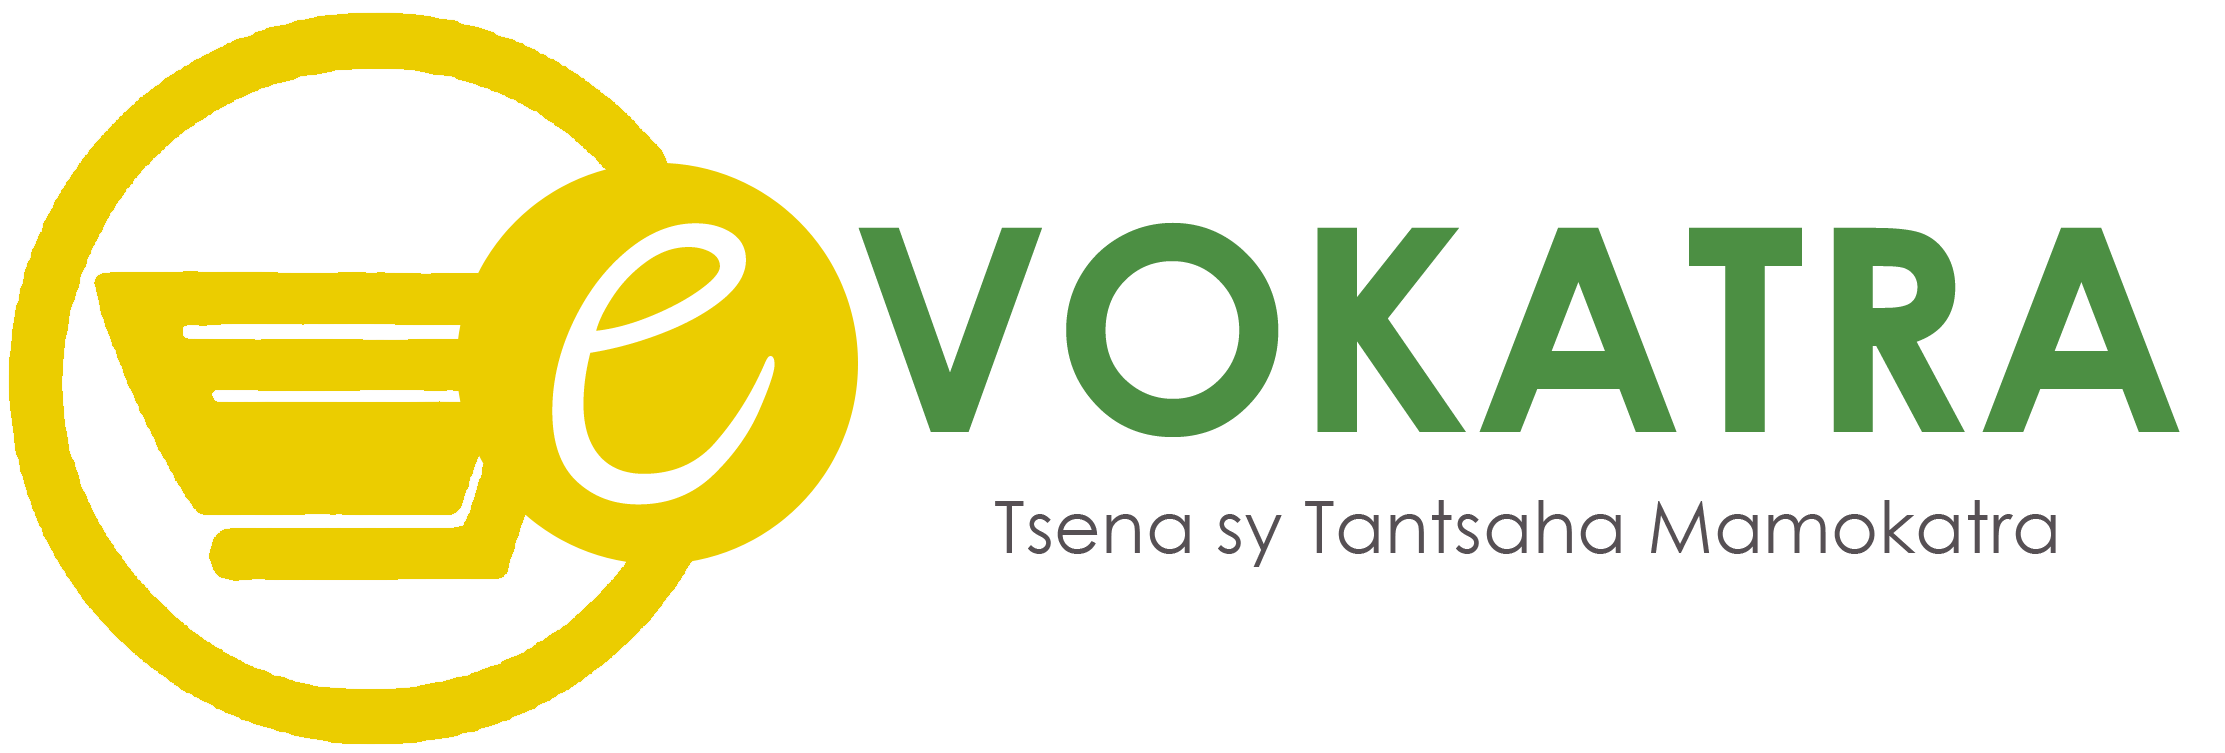 E-Vokatra – Une plateforme moderne de mise en relation des producteurs et des consommateurs